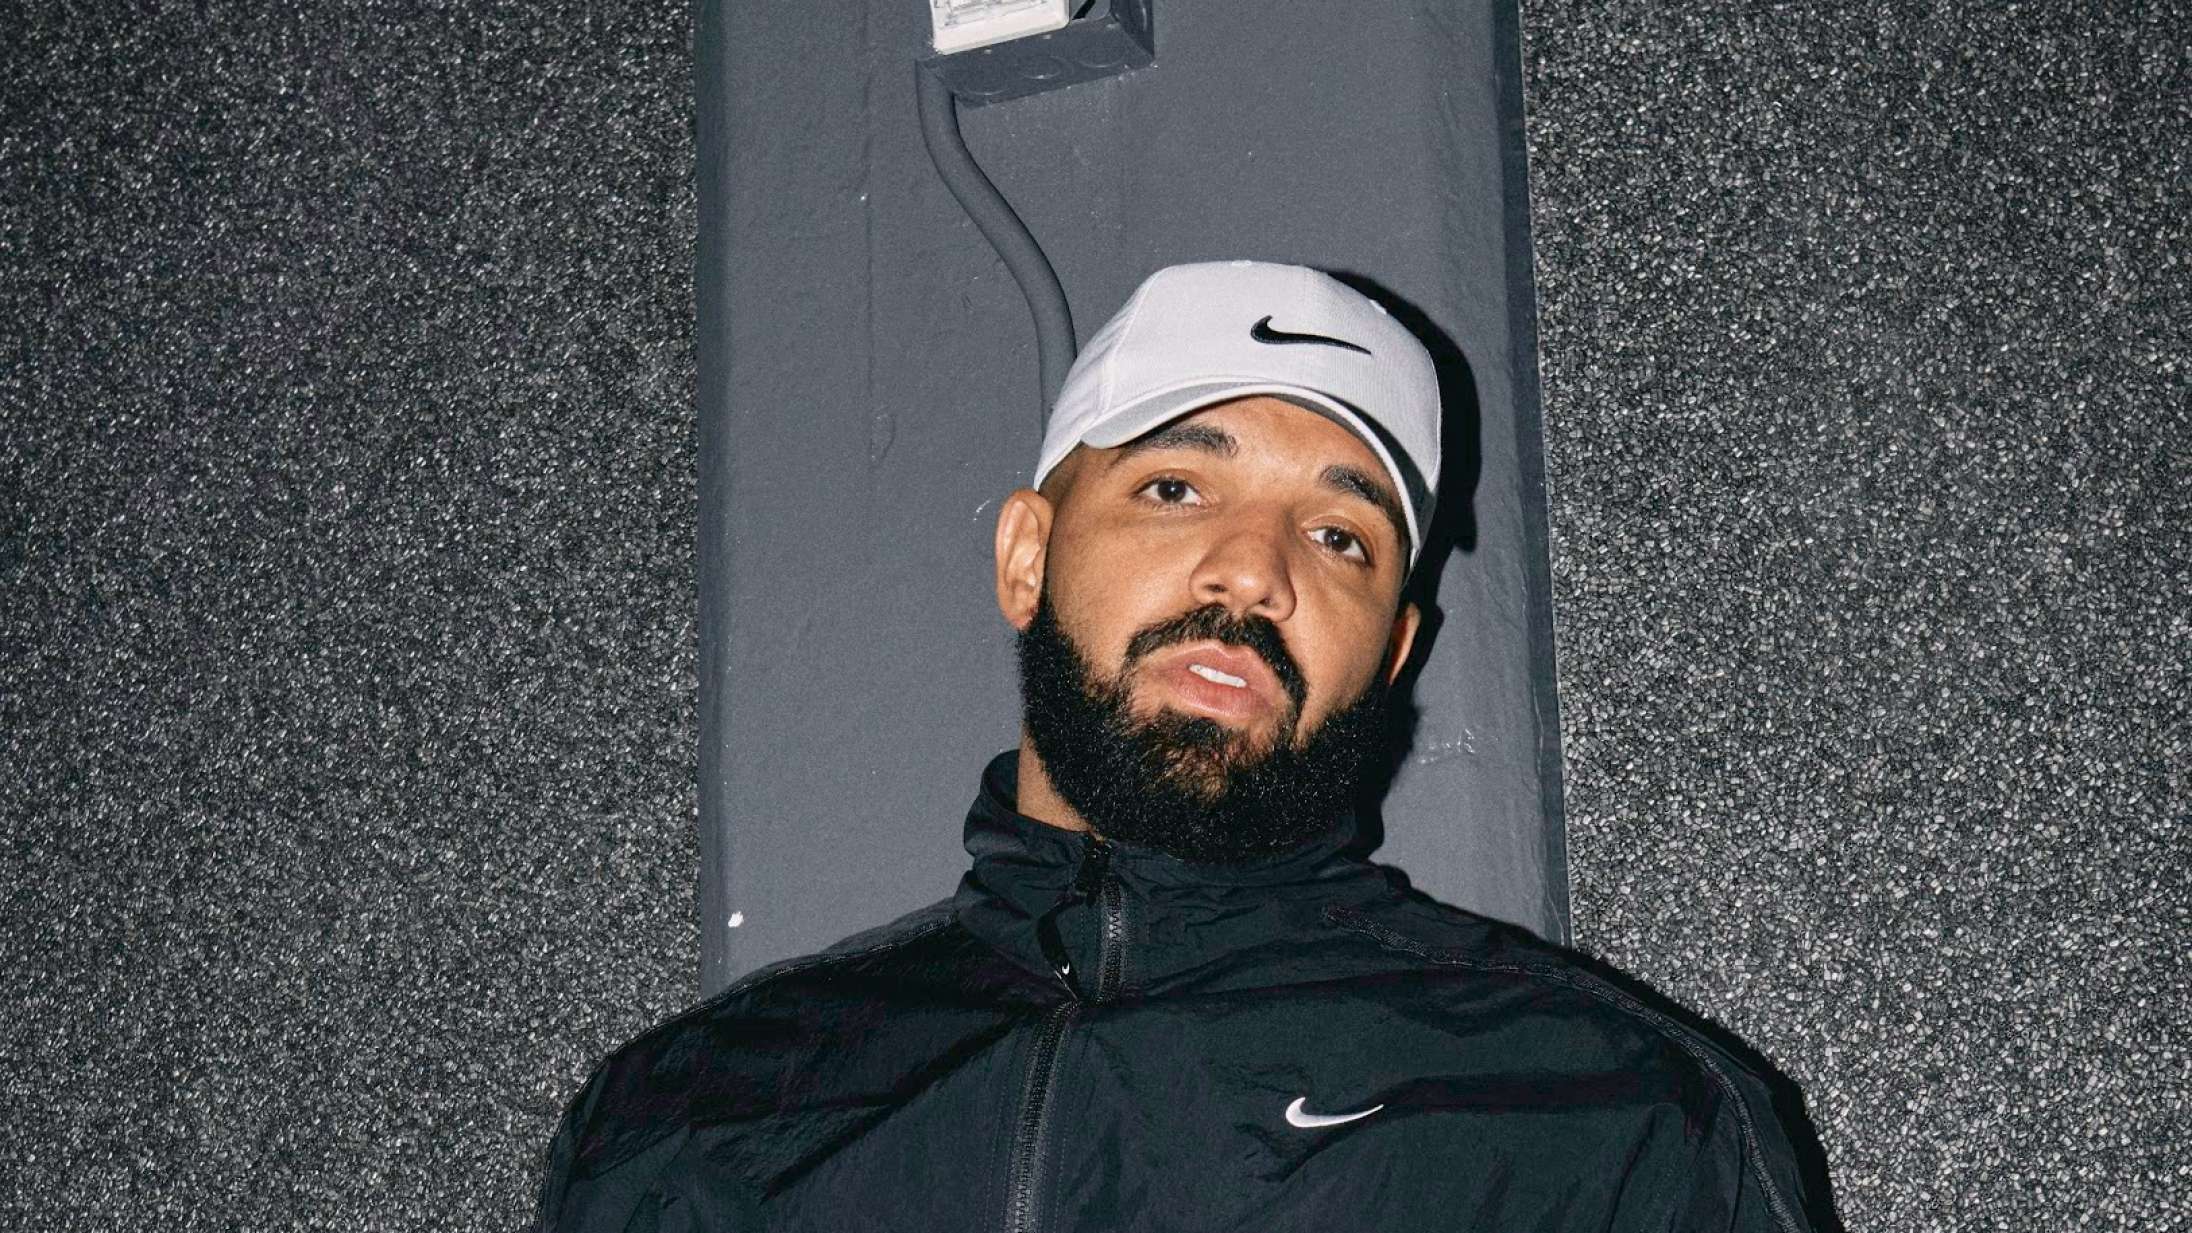 Vent, er Drakes forhadte albumcover lavet af kontroversiel kunstkendis?